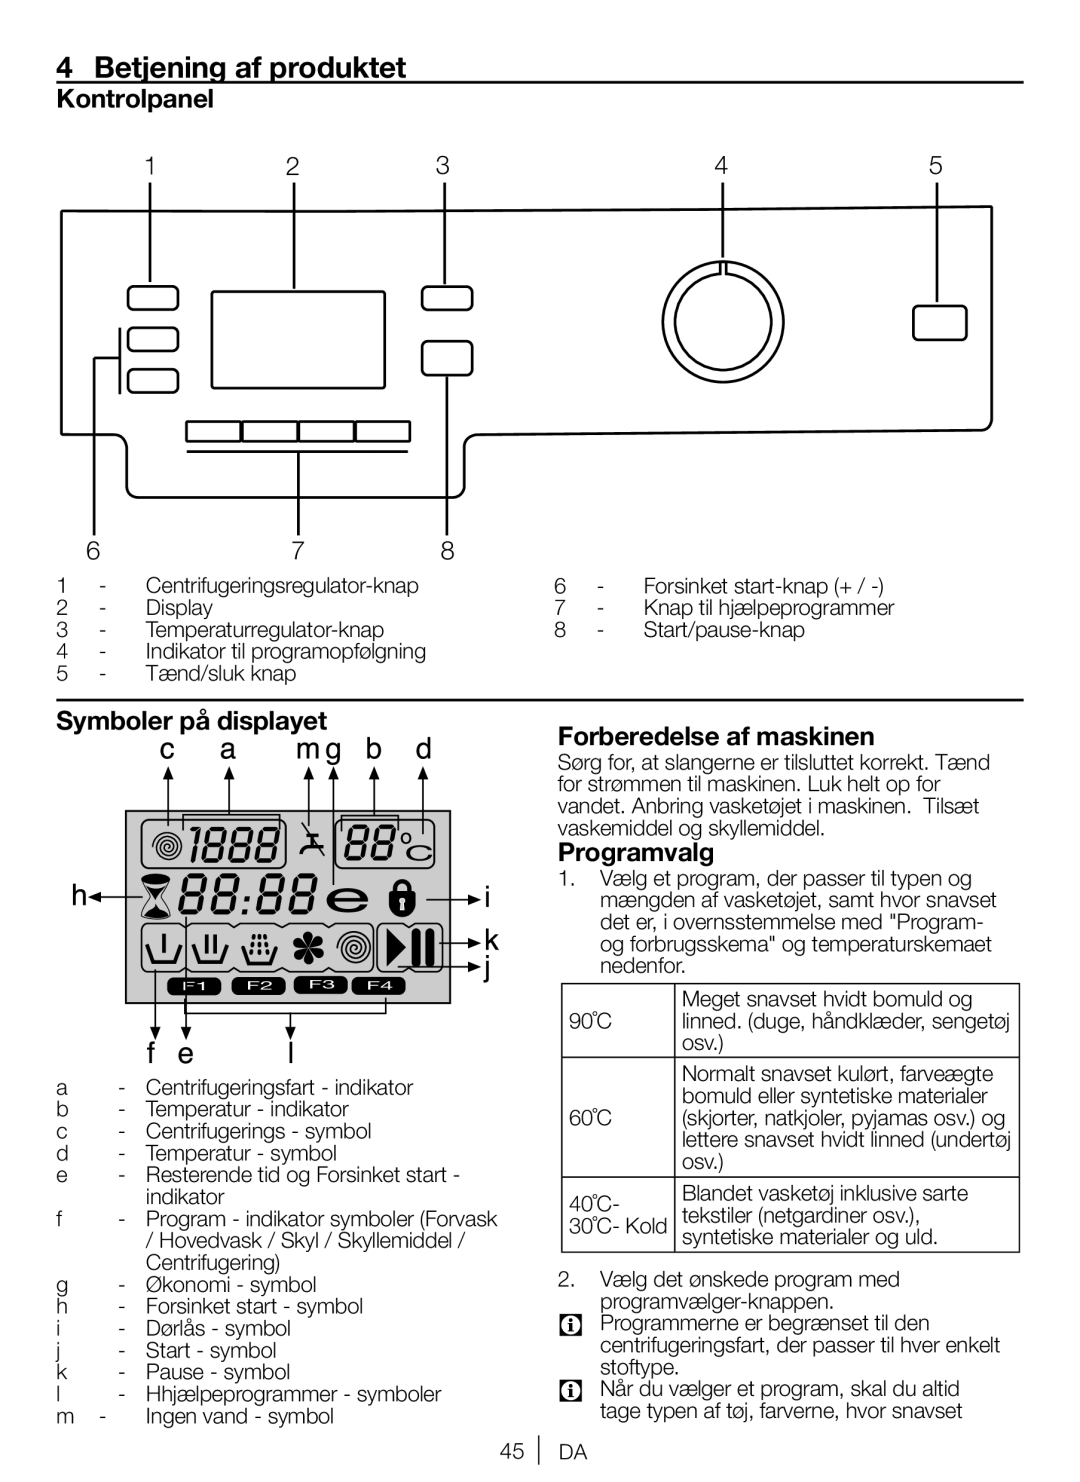 Blomberg AE20, WNF 8422 Betjening af produktet, Kontrolpanel, Symboler på displayet, Forberedelse af maskinen, Programvalg 